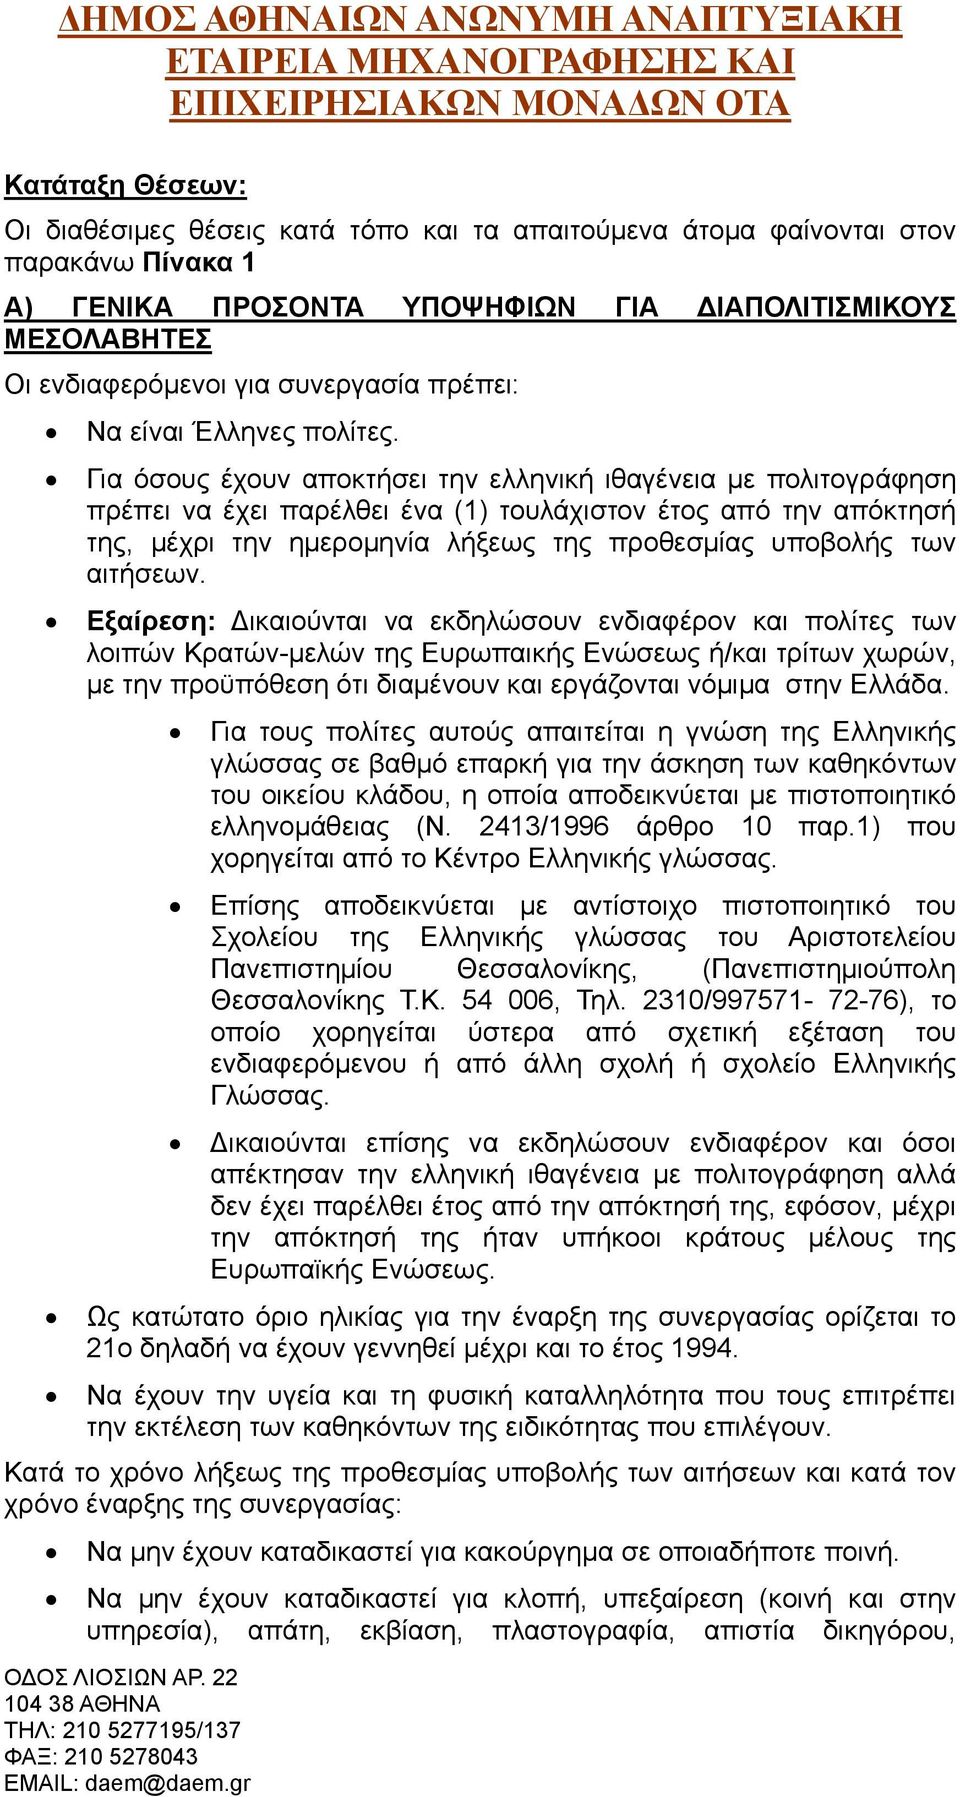 Για όσους έχουν αποκτήσει την ελληνική ιθαγένεια με πολιτογράφηση πρέπει να έχει παρέλθει ένα (1) τουλάχιστον έτος από την απόκτησή της, μέχρι την ημερομηνία λήξεως της προθεσμίας υποβολής των